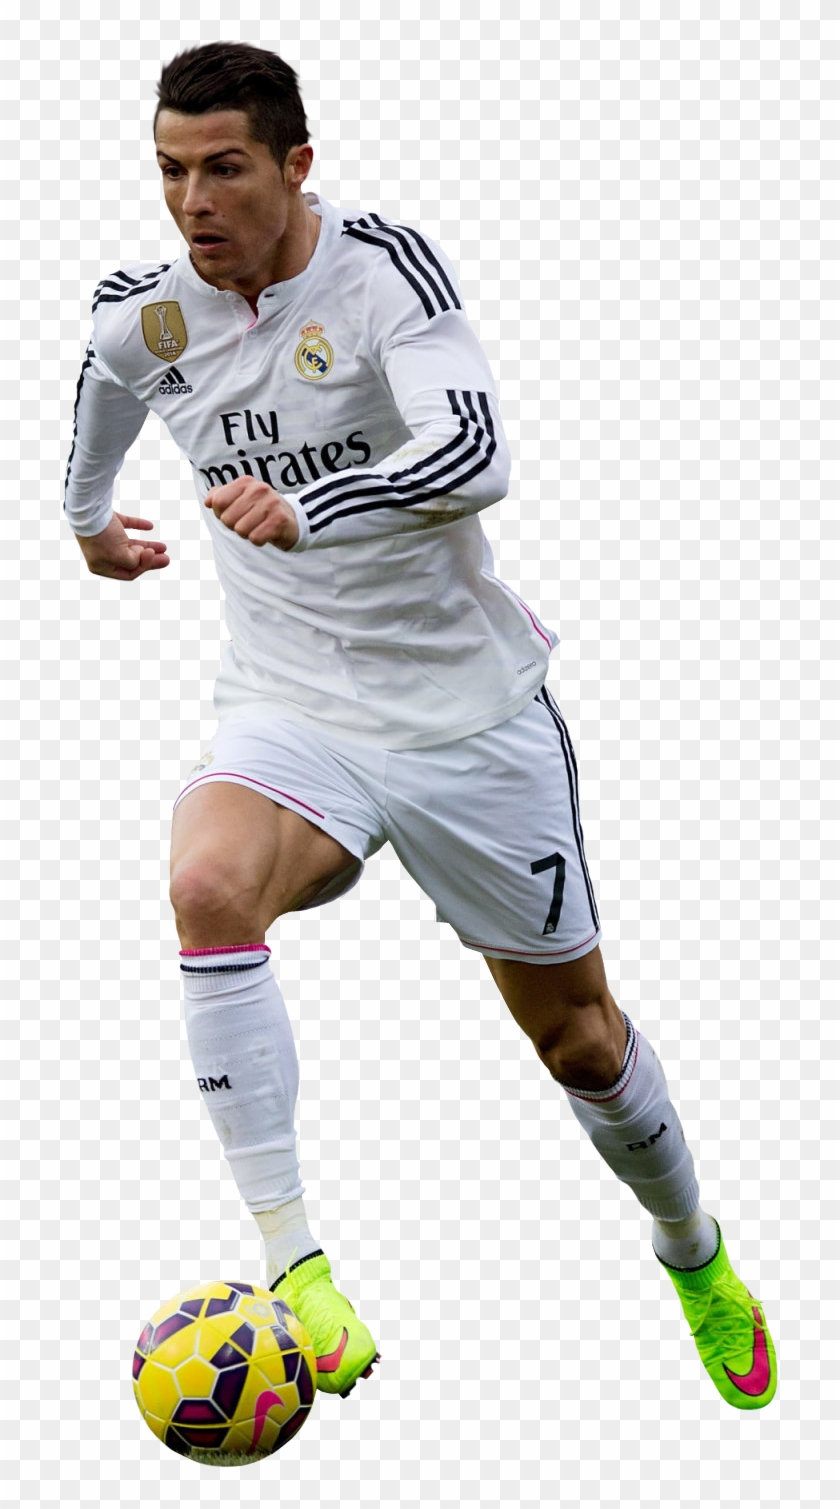 Download Cristiano Ronaldo With Soccer Ball - Cristiano Ronaldo White ...